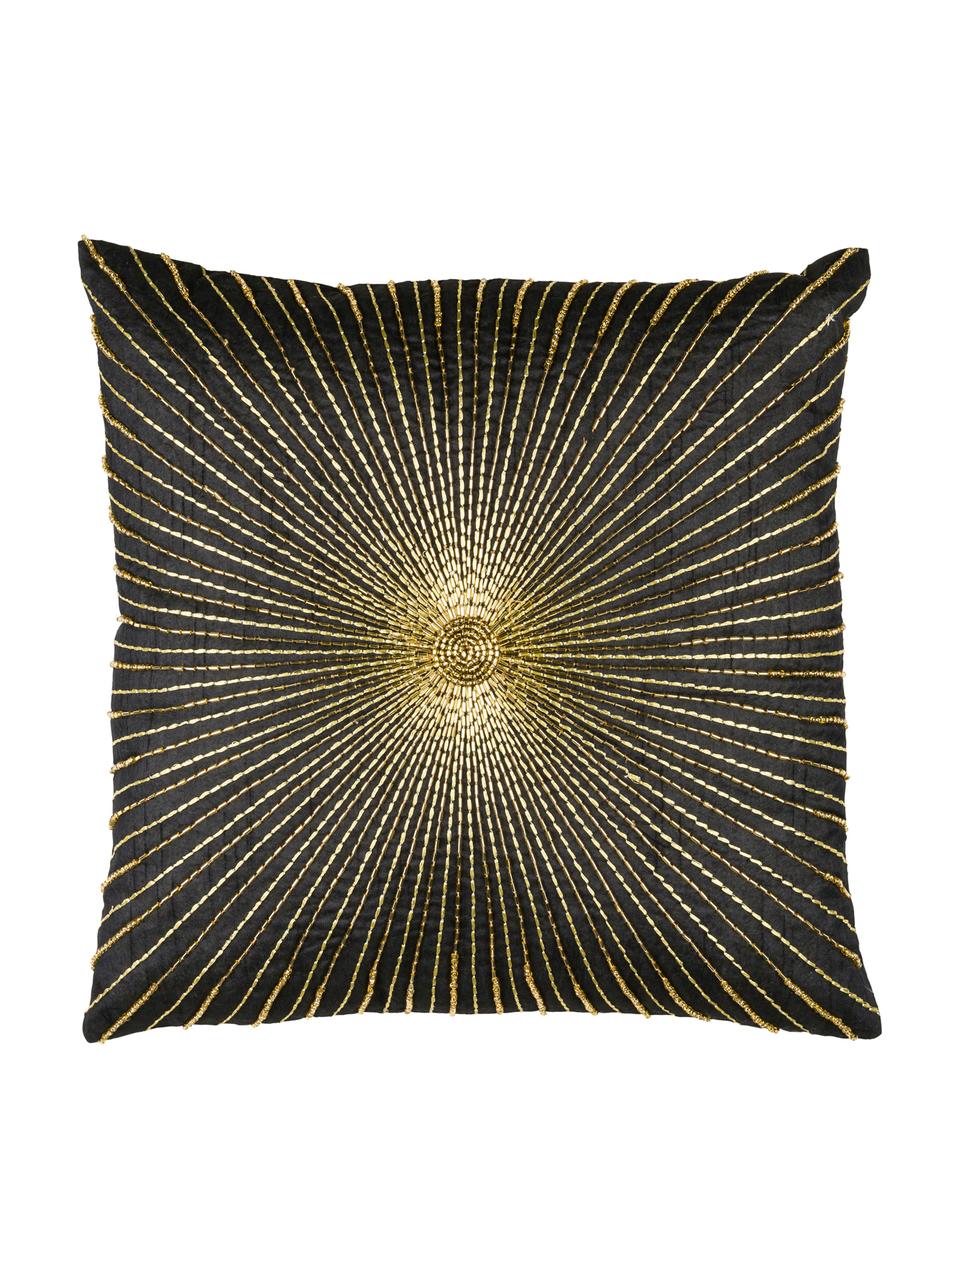 Kussenhoes Sunray met borduurwerk, 100% polyester, Zwart, goudkleurig, 40 x 40 cm